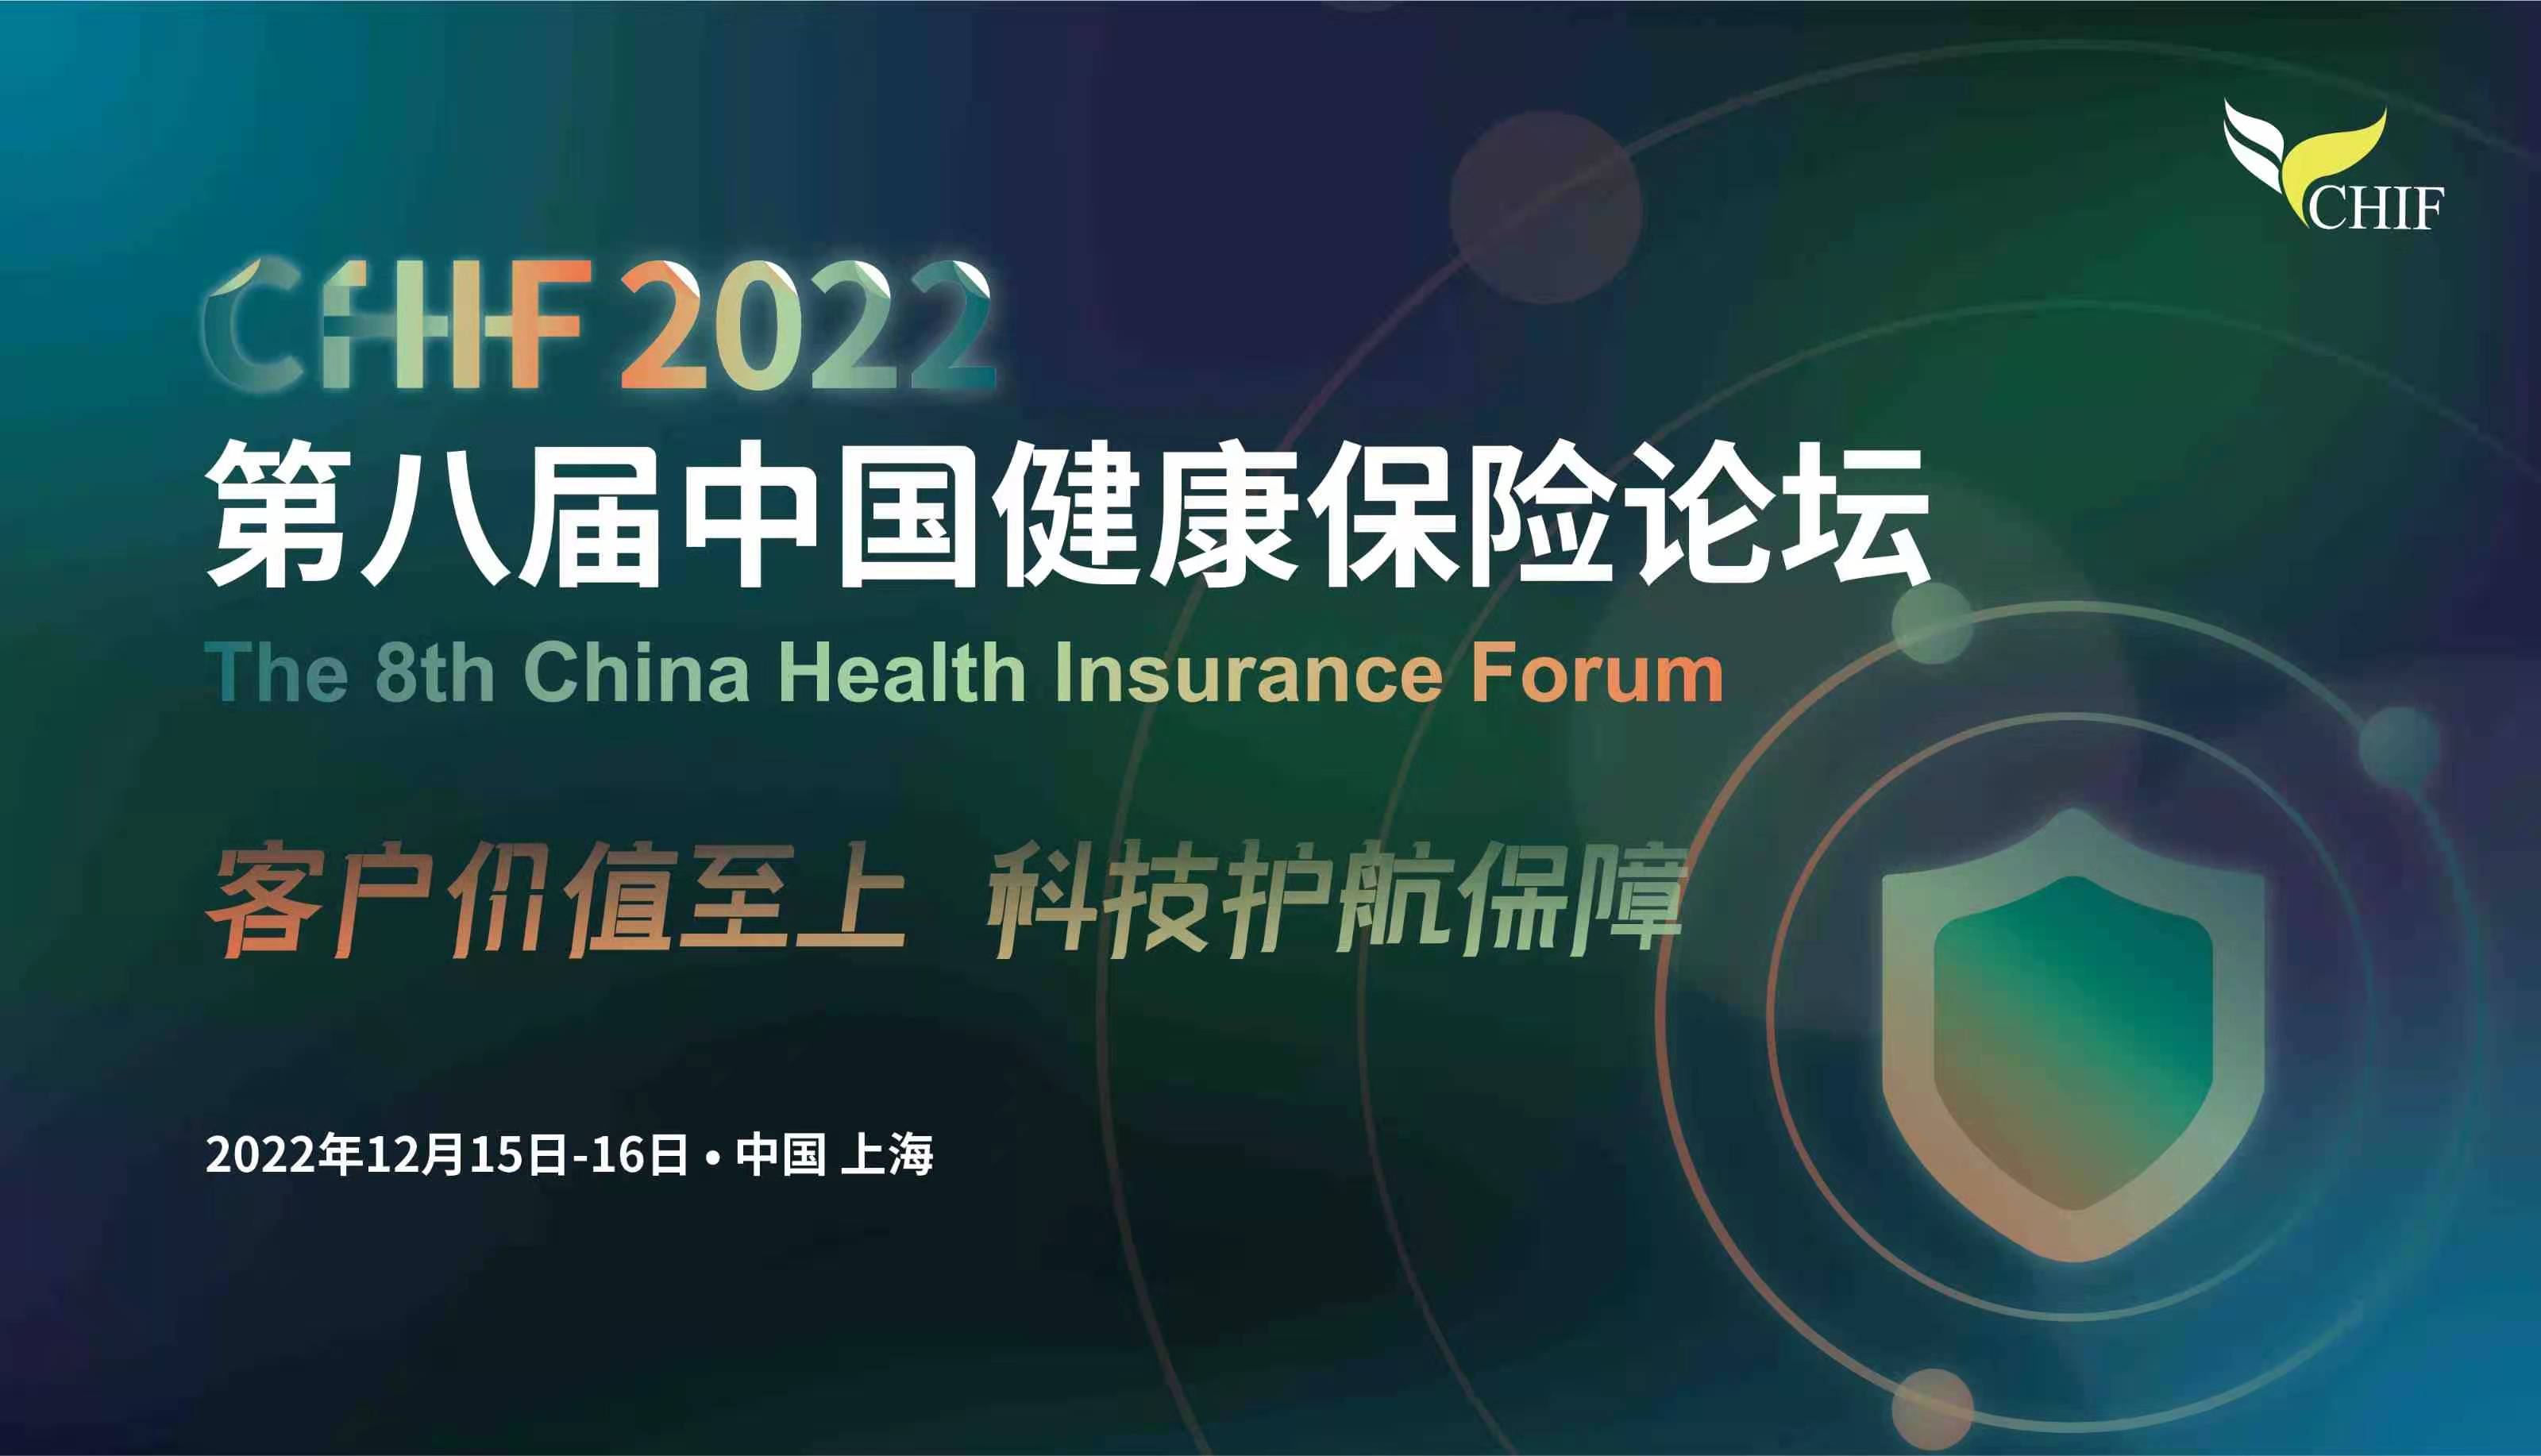 【報名倒計時！最新發言大咖陣容公布！】第八屆中國健康保險論壇12月上海開幕！  -101420-1